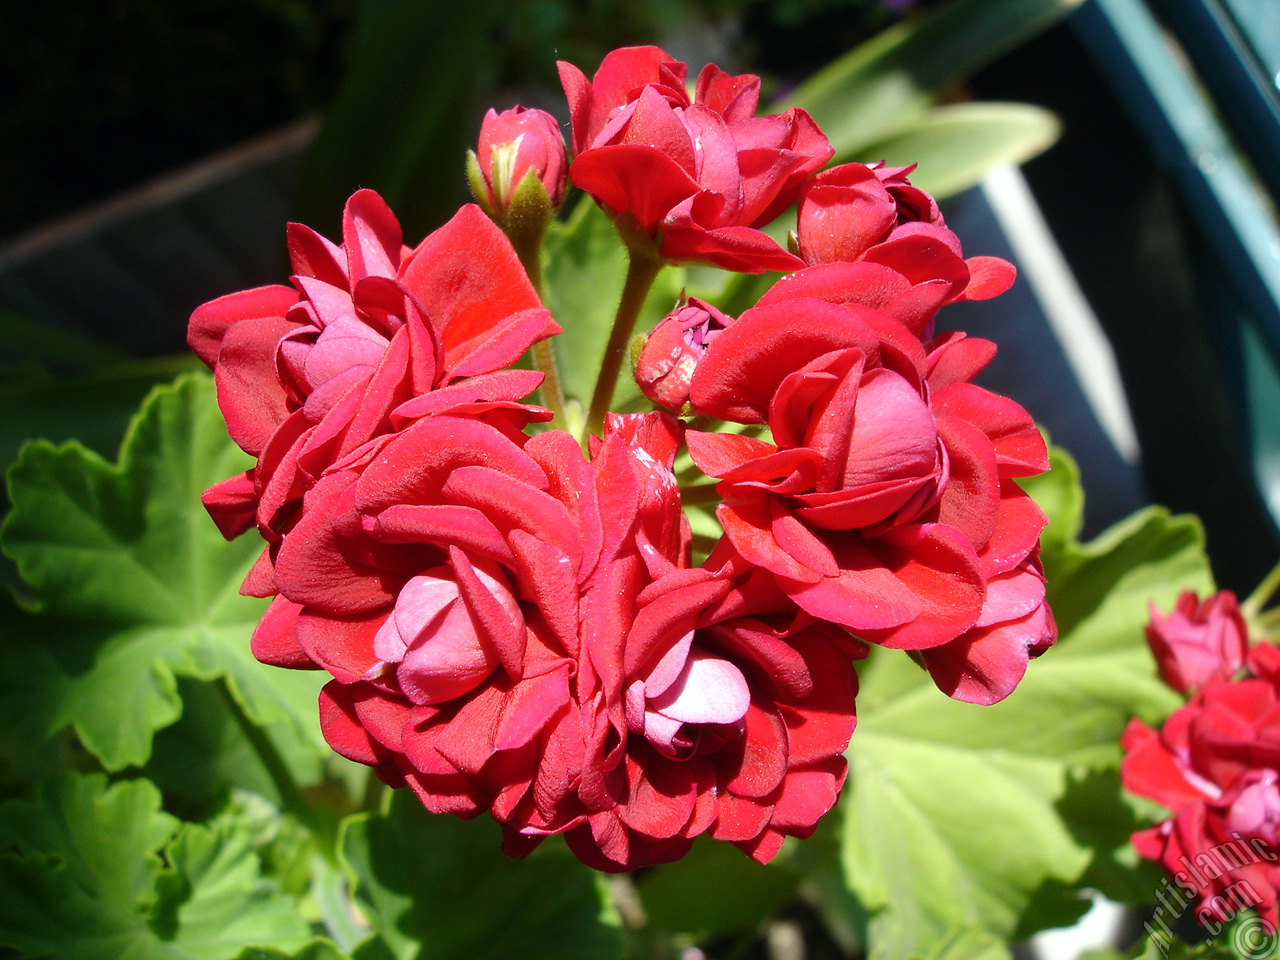 Red color Pelargonia -Geranium- flower.
